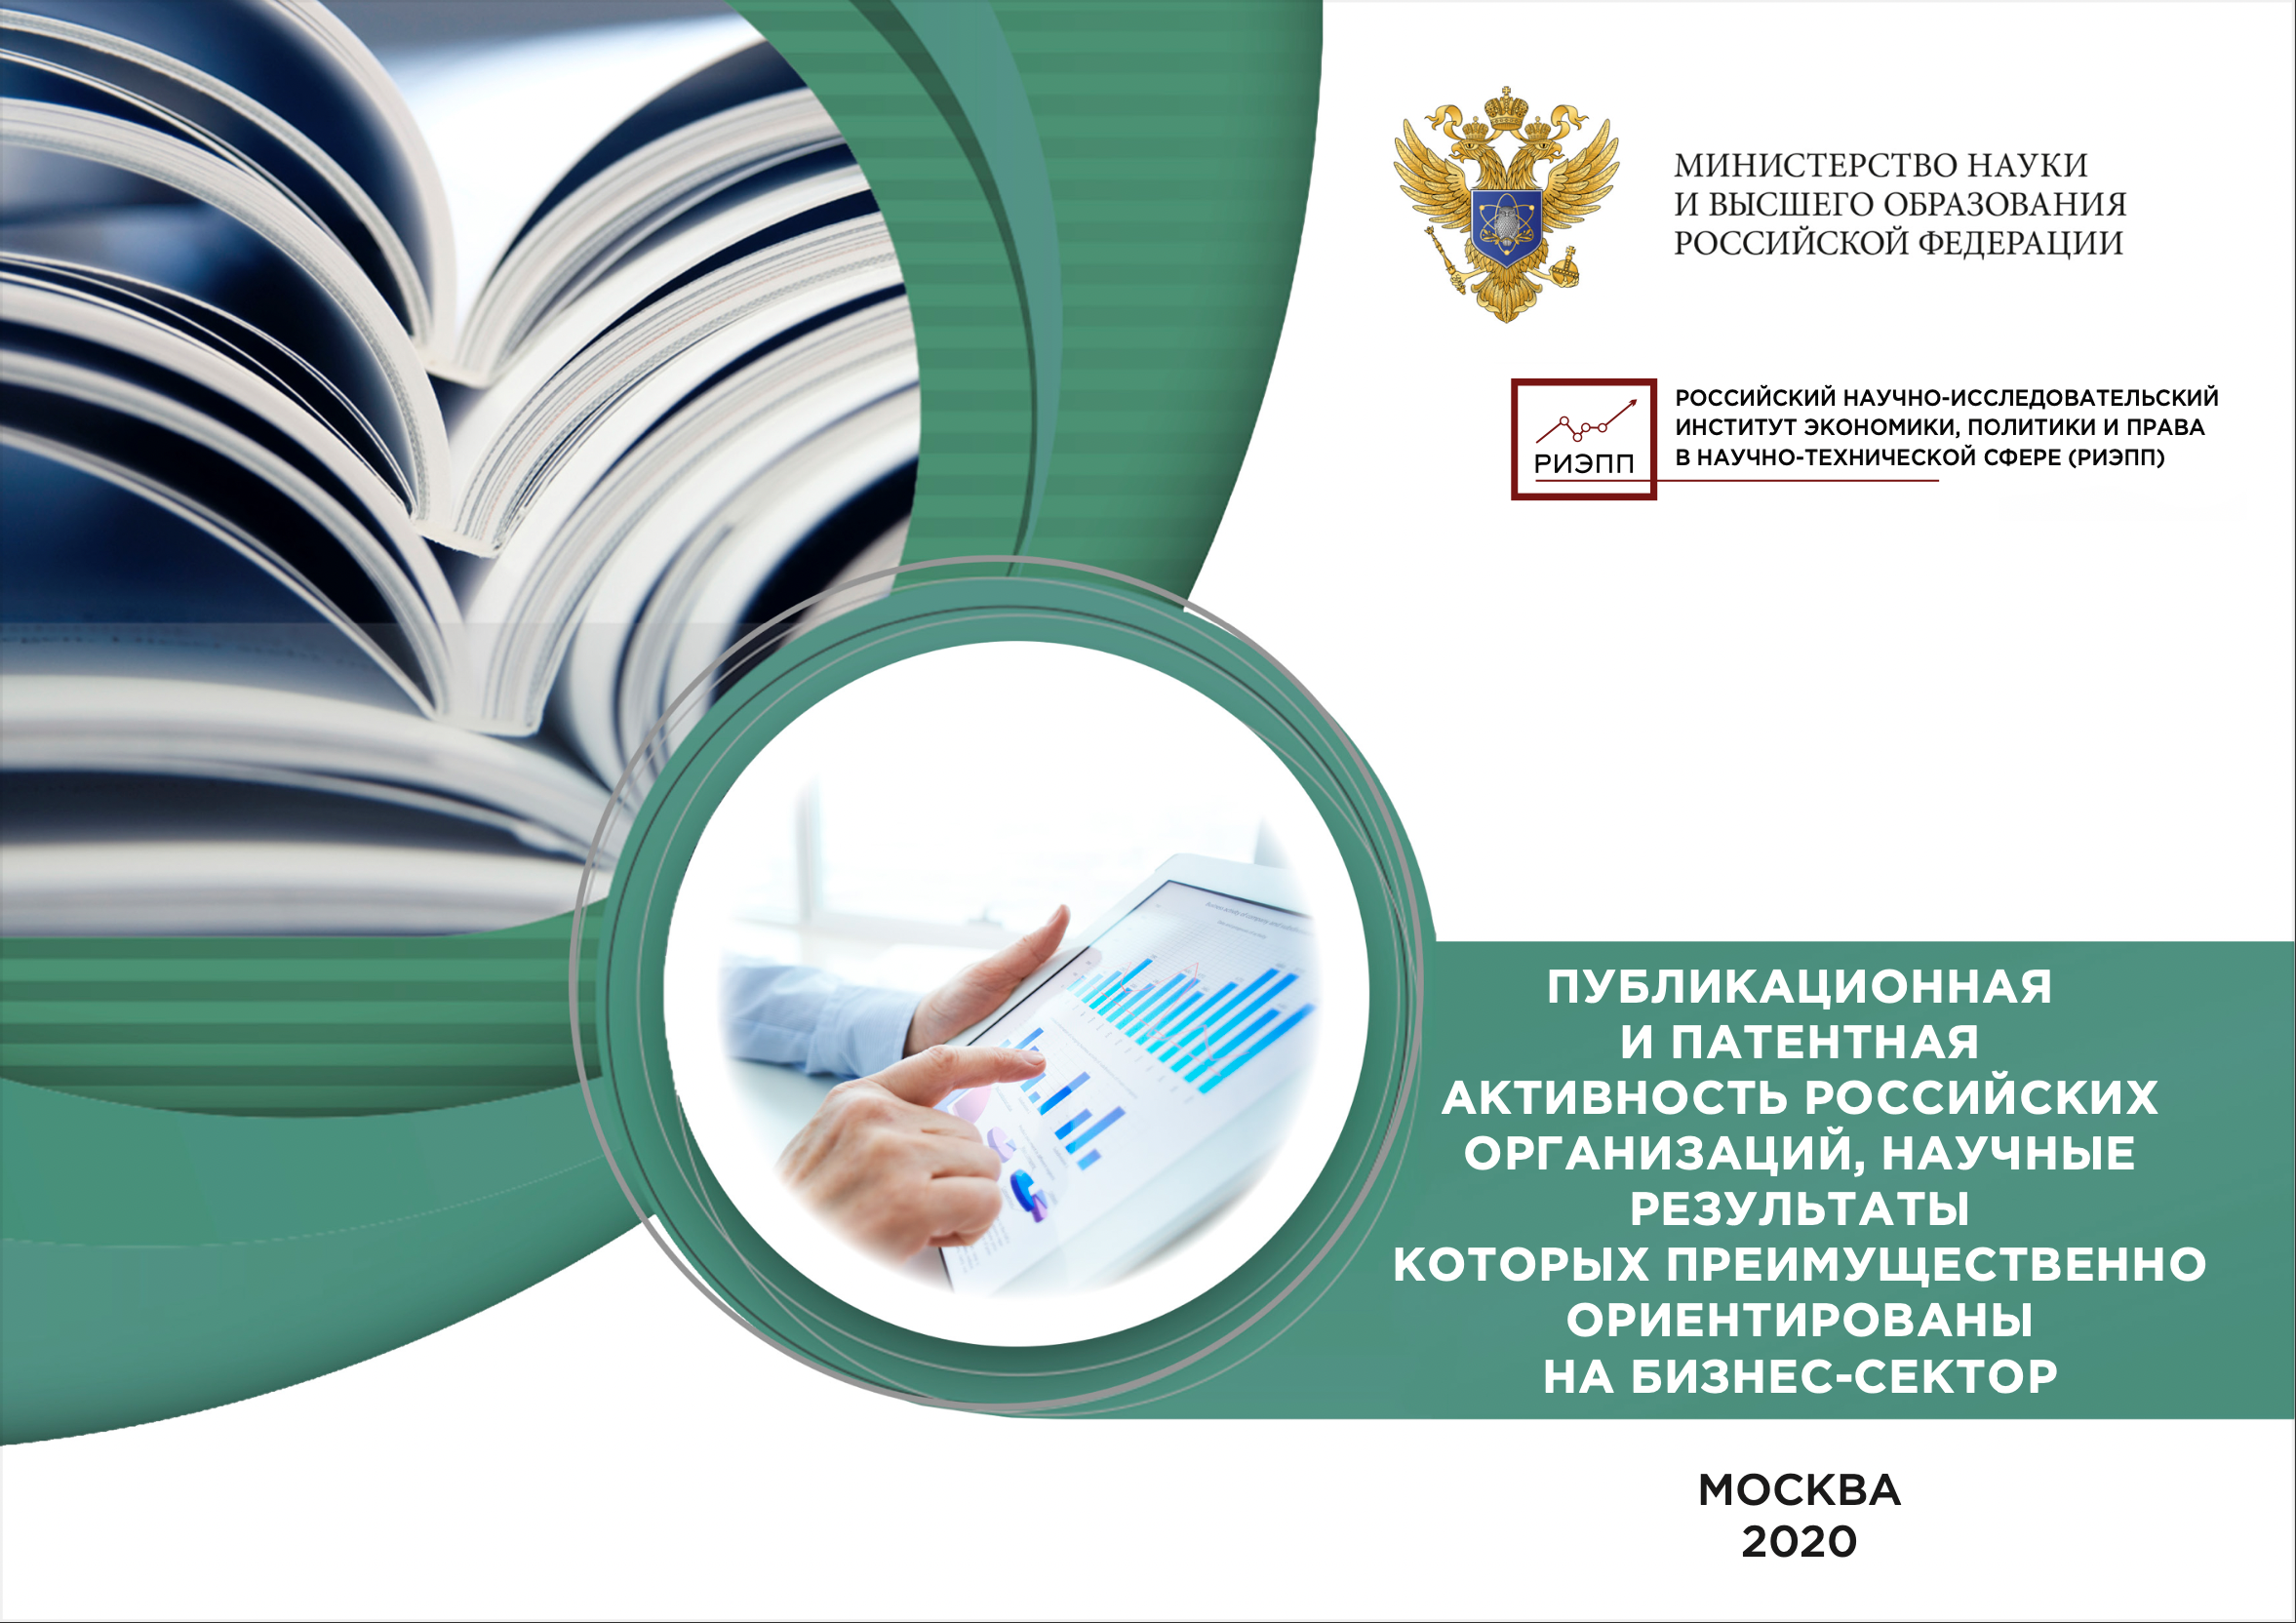 Публикационная и патентная активность российских организаций, научные результаты которых преимущественно ориентированы на бизнес-сектор